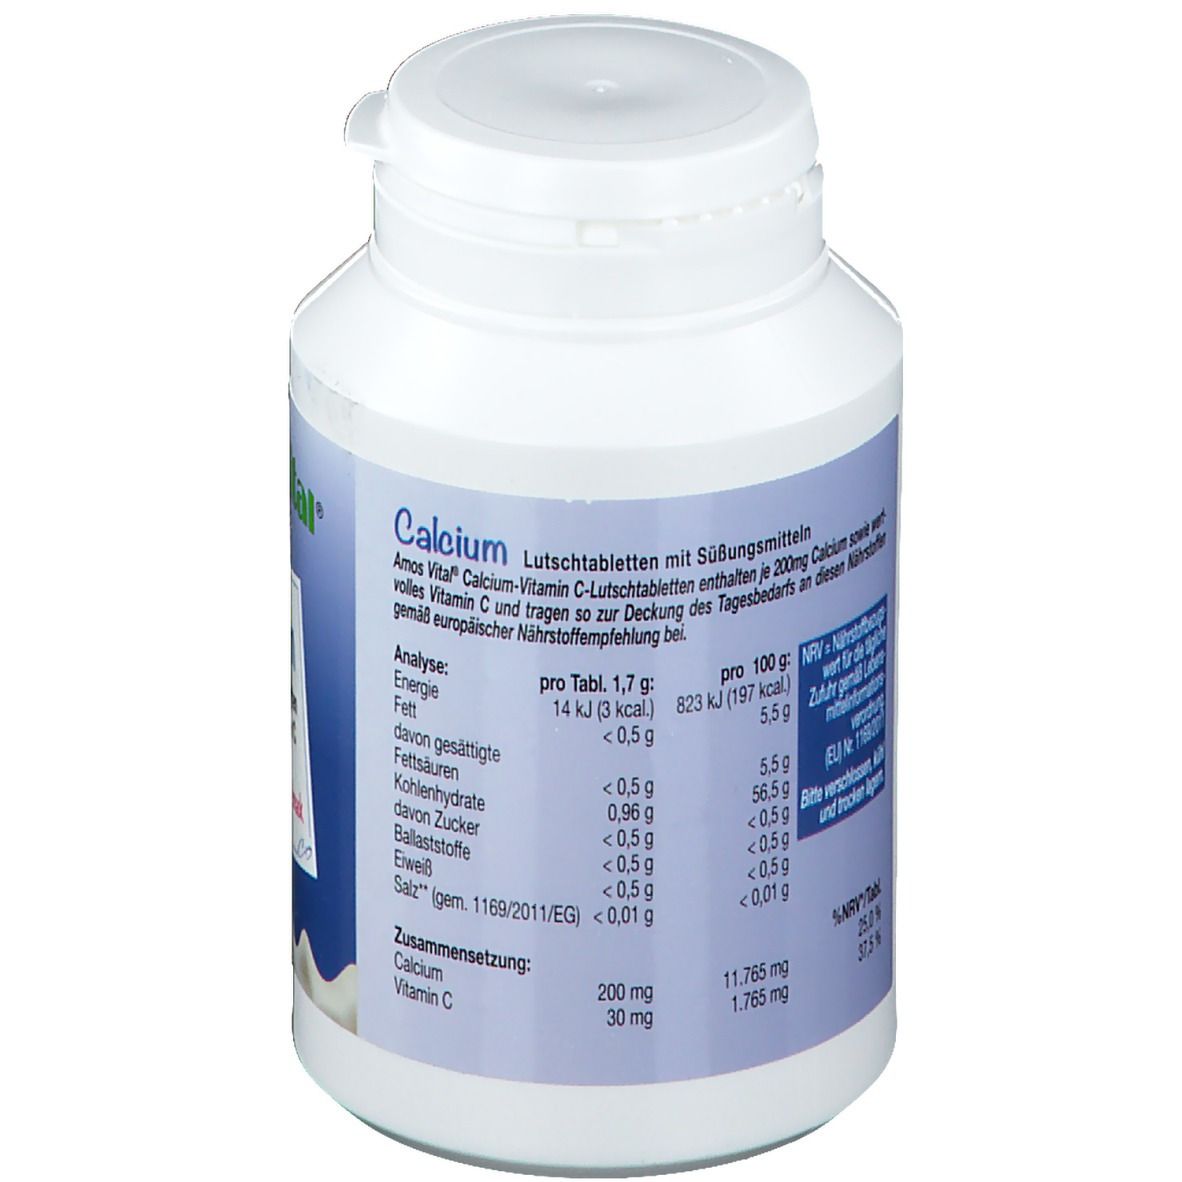 AmosVital® Calcium mit Vitamin C